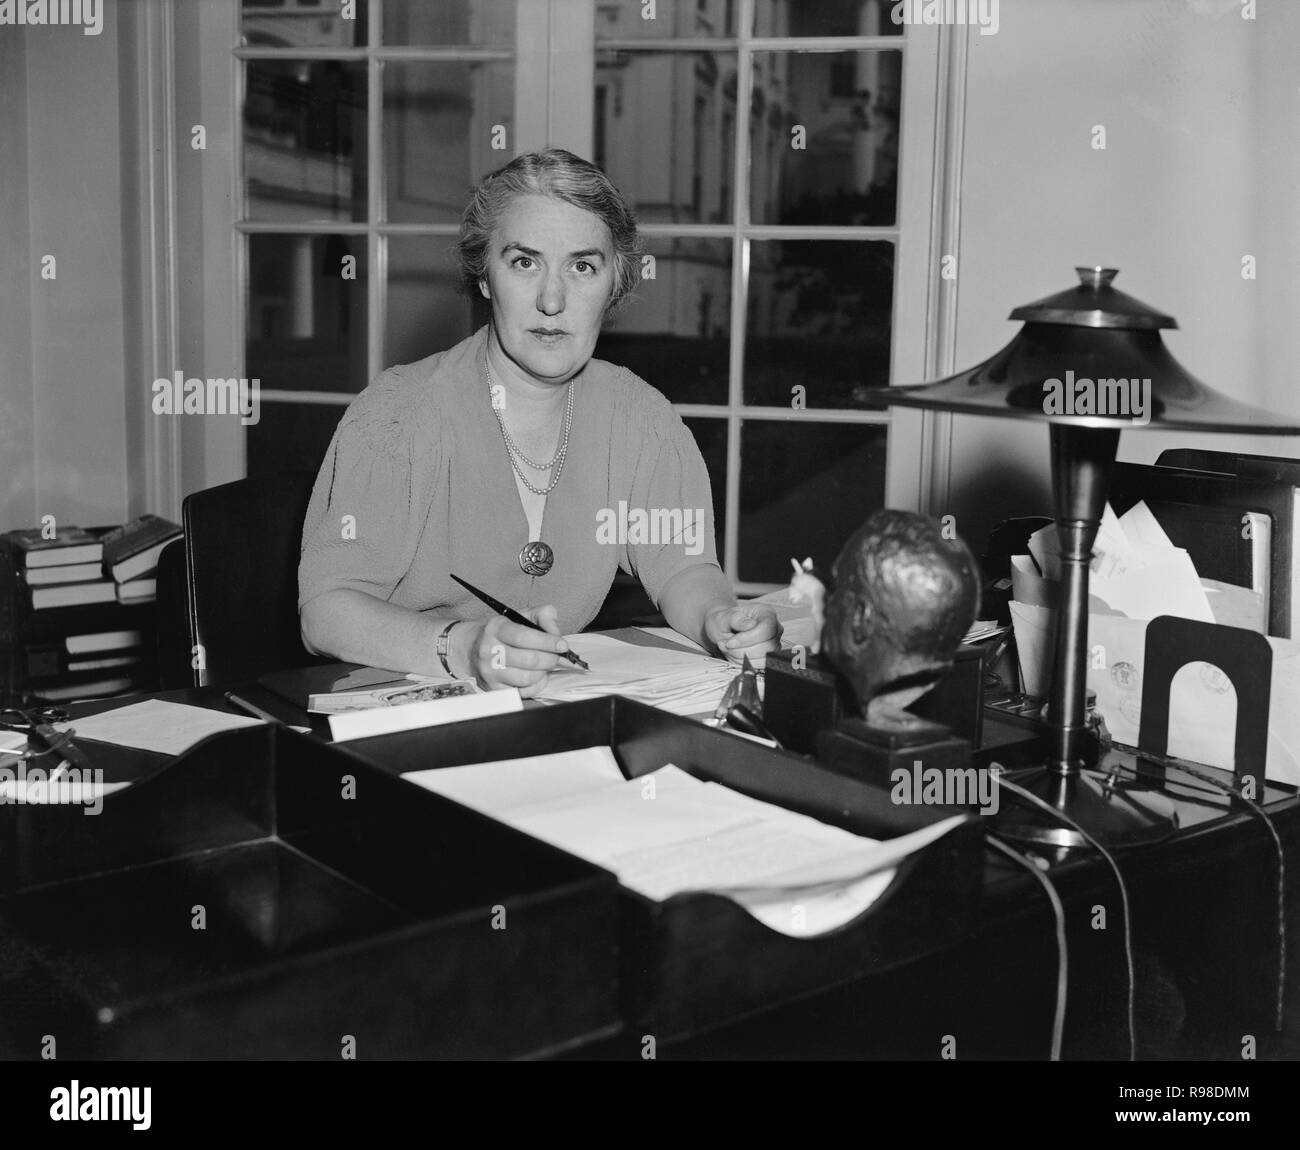 La sig.ra Marguerite Lehand, segretario personale del Presidente Franklin Roosevelt, Ritratto seduto alla scrivania, Washington DC, USA, Harris & Ewing, 1938 Foto Stock